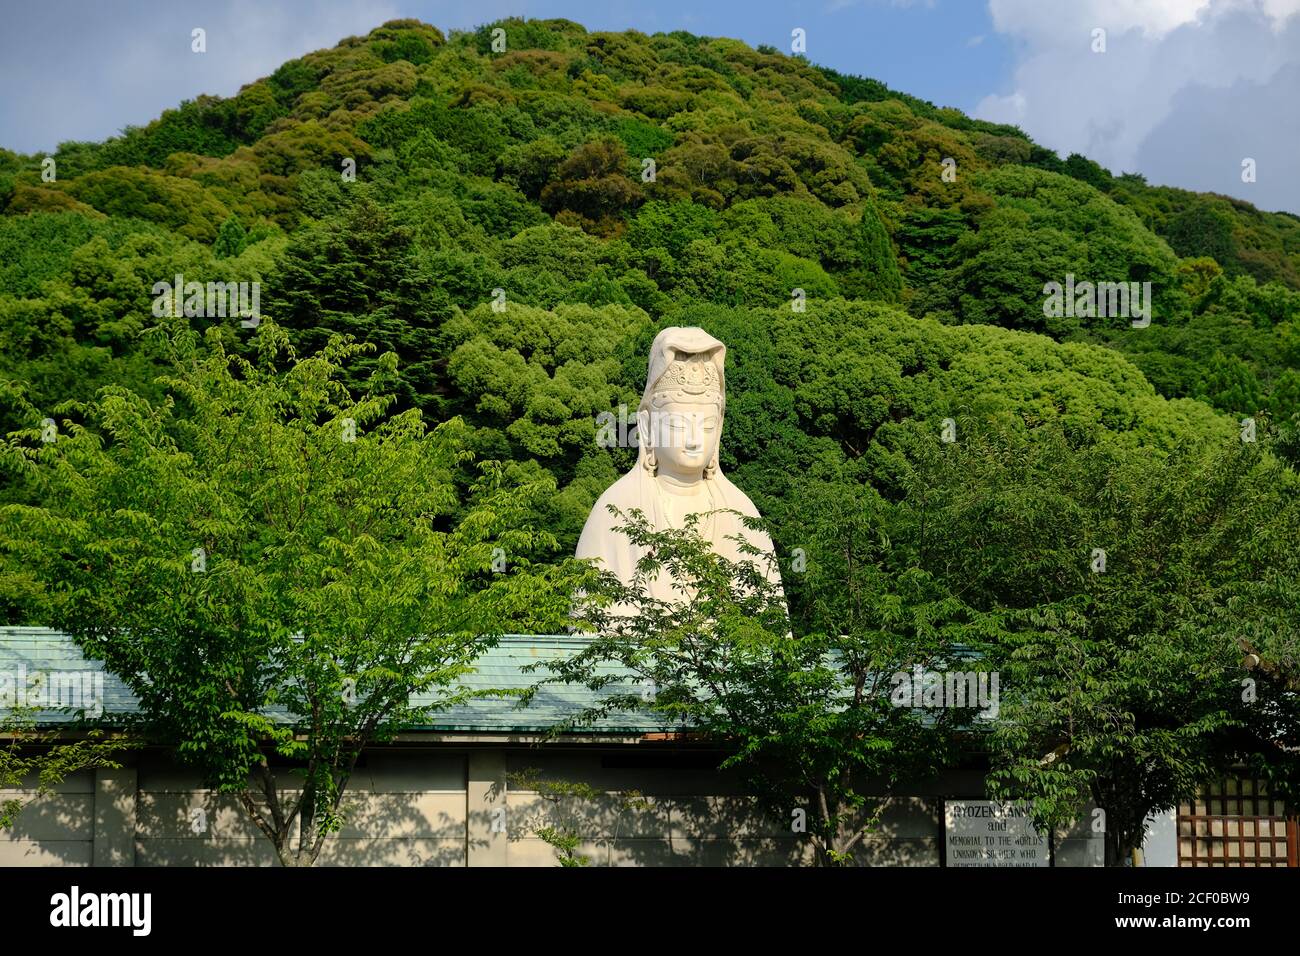 Kyoto Giappone - tempio buddista Ryozankannon con statua gigante di Buddha Foto Stock